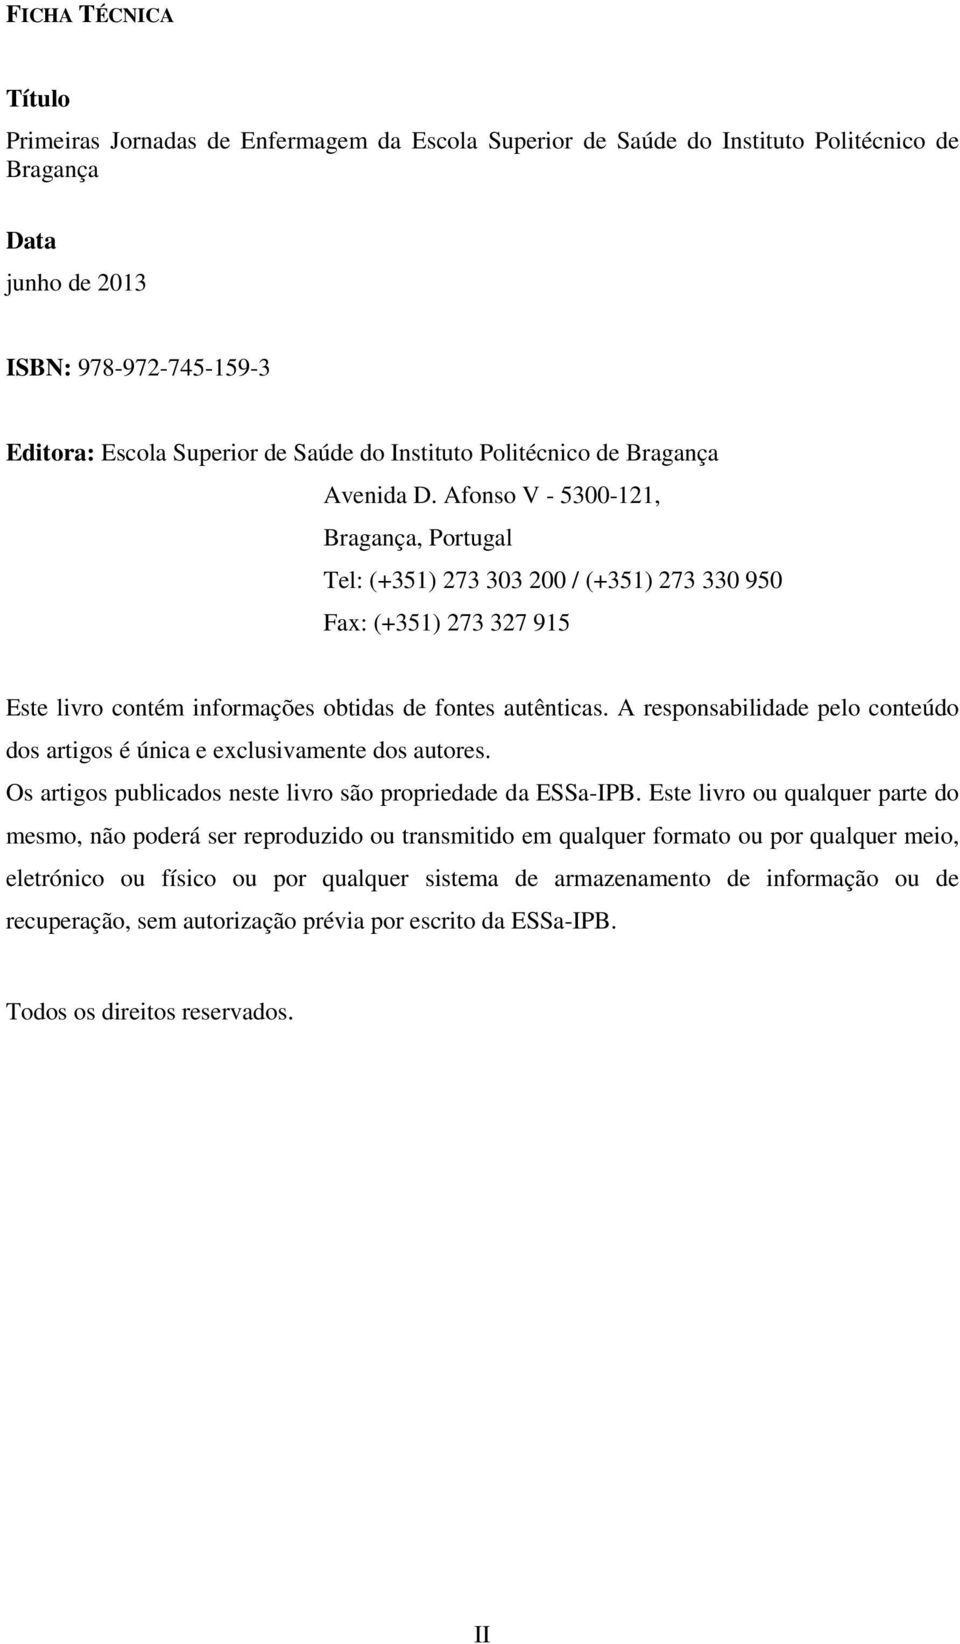 Afonso V - 5300-121, Bragança, Portugal Tel: (+351) 273 303 200 / (+351) 273 330 950 Fax: (+351) 273 327 915 Este livro contém informações obtidas de fontes autênticas.